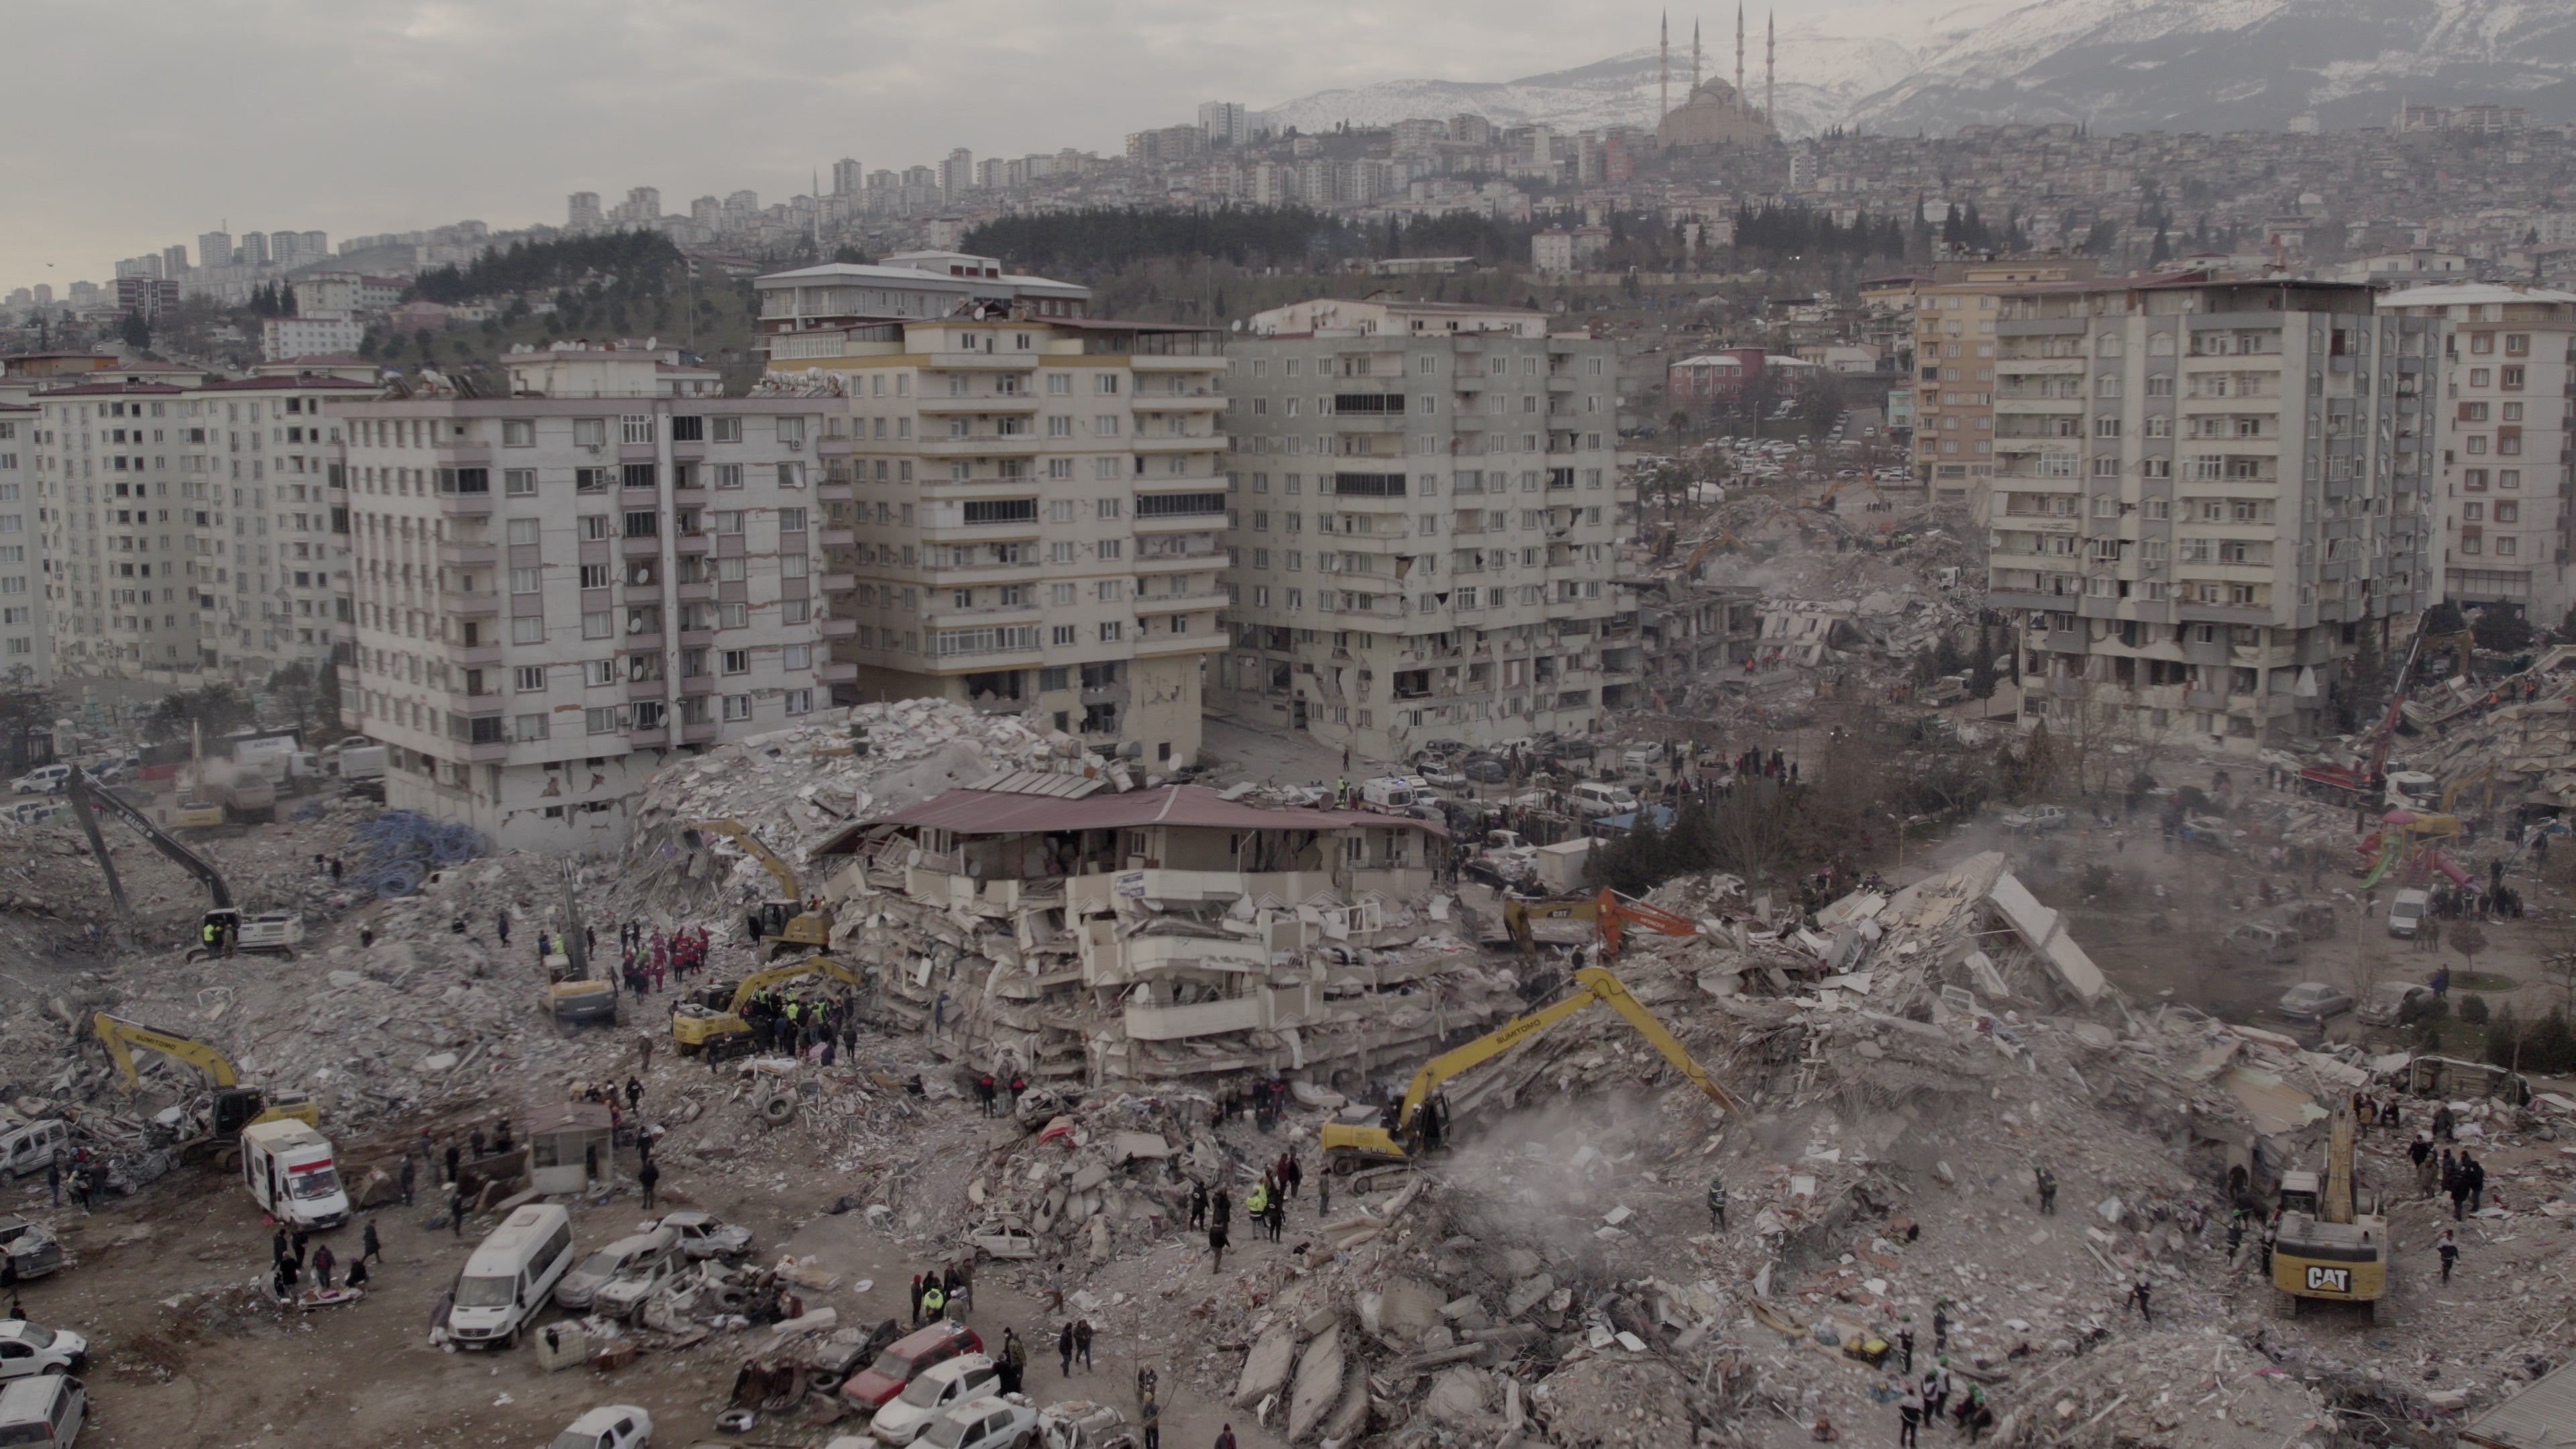 Türkiye'nin Kahramanmaraş ilinde 6 Şubat 2023 tarihinde meydana gelen depremlerde Ebrar Sitesi'ne ait blokların çökmesi sonucu en az 1400 kişi hayatını kaybetti.